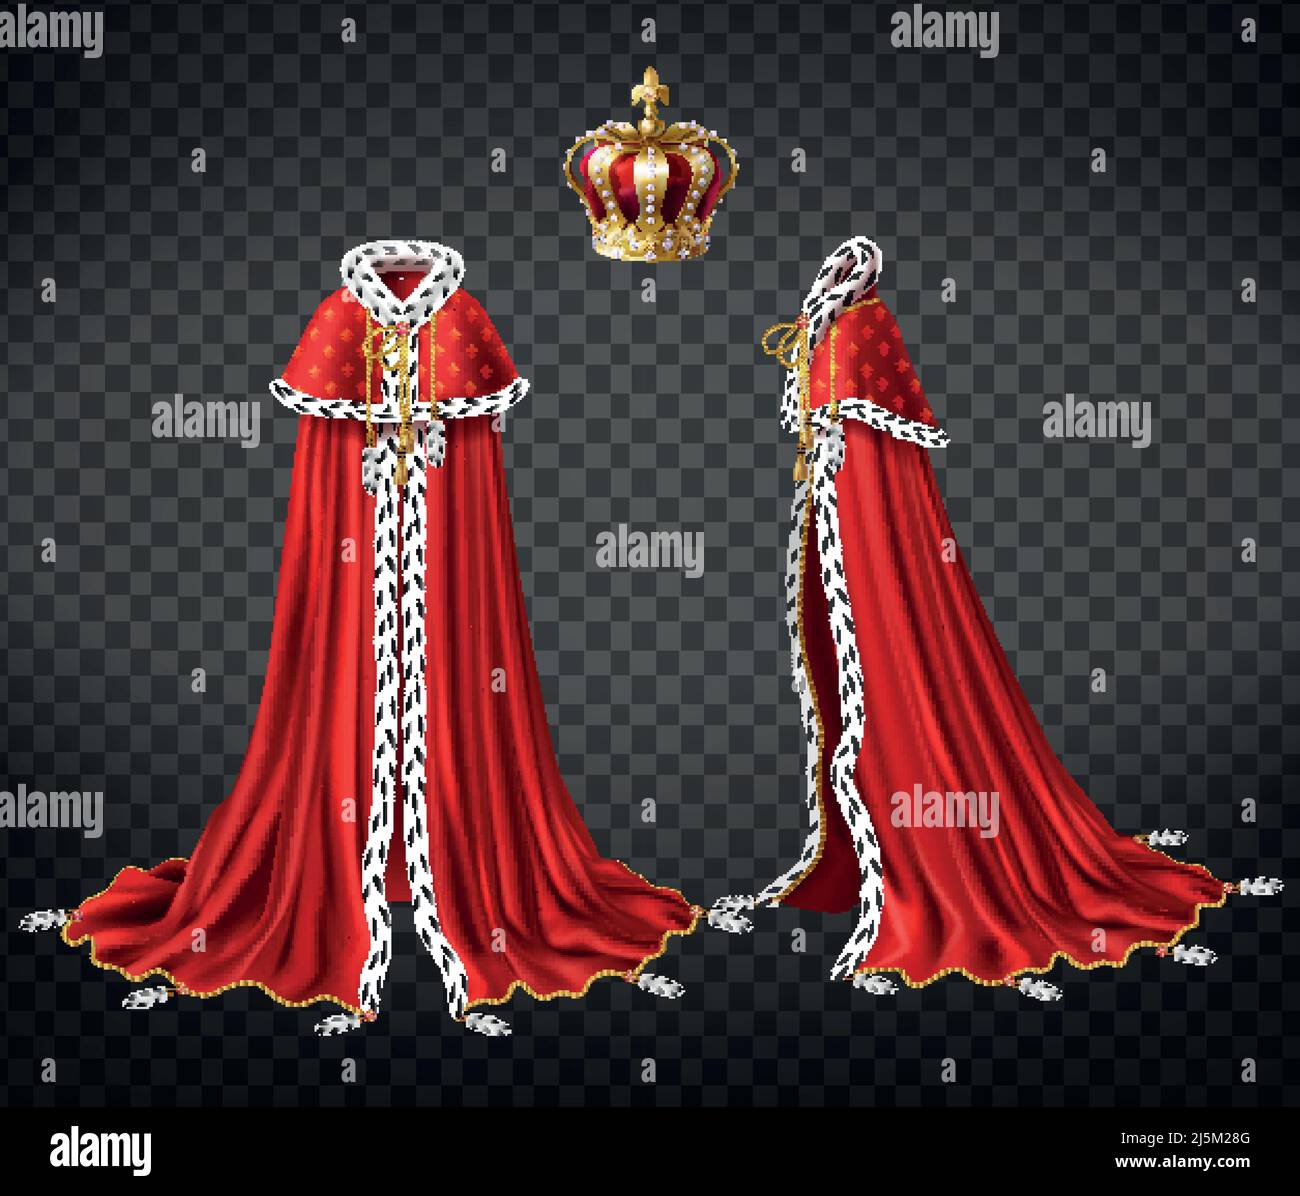 Robe royale de Kings avec cape et manteau de fourrure d'ermine et précieux, couronne d'or décoré perls 3D réaliste vecteur avant, illustration de la vue latérale est Illustration de Vecteur